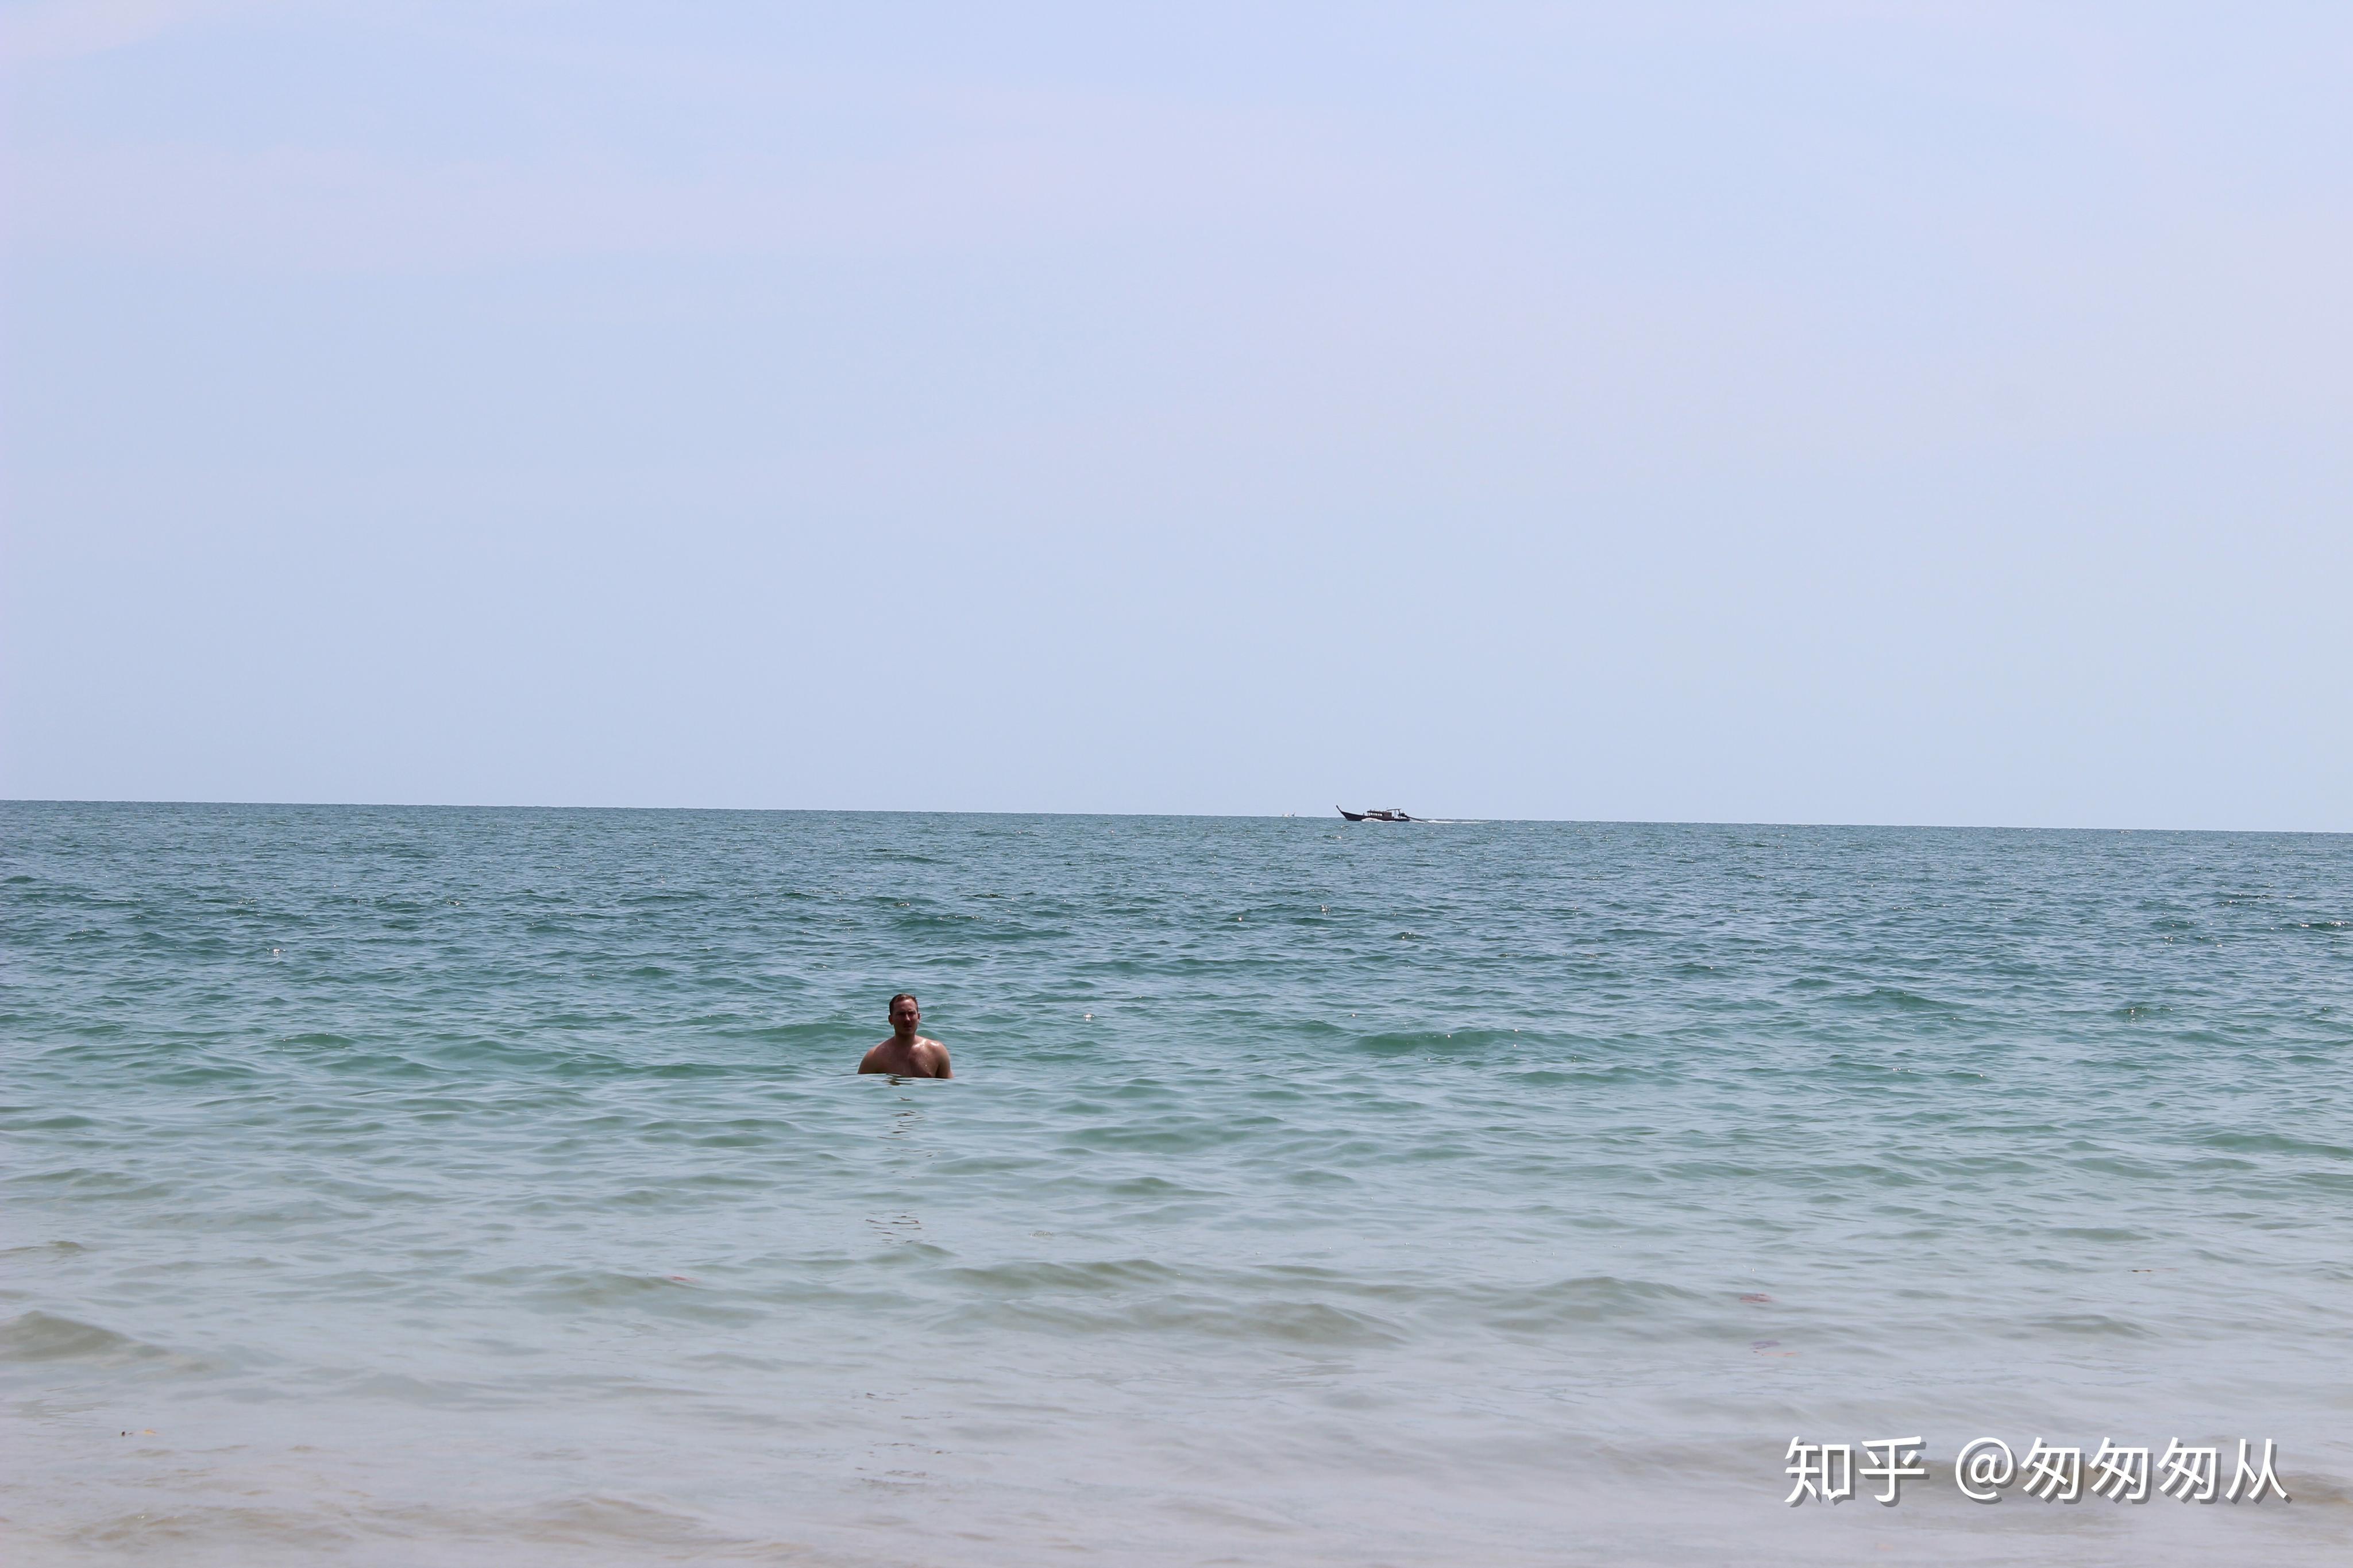 泰国攻略之小众甲米的打开方式：性感裸晒 比基尼出街 躺在海上漂啊漂...（上篇） - 知乎